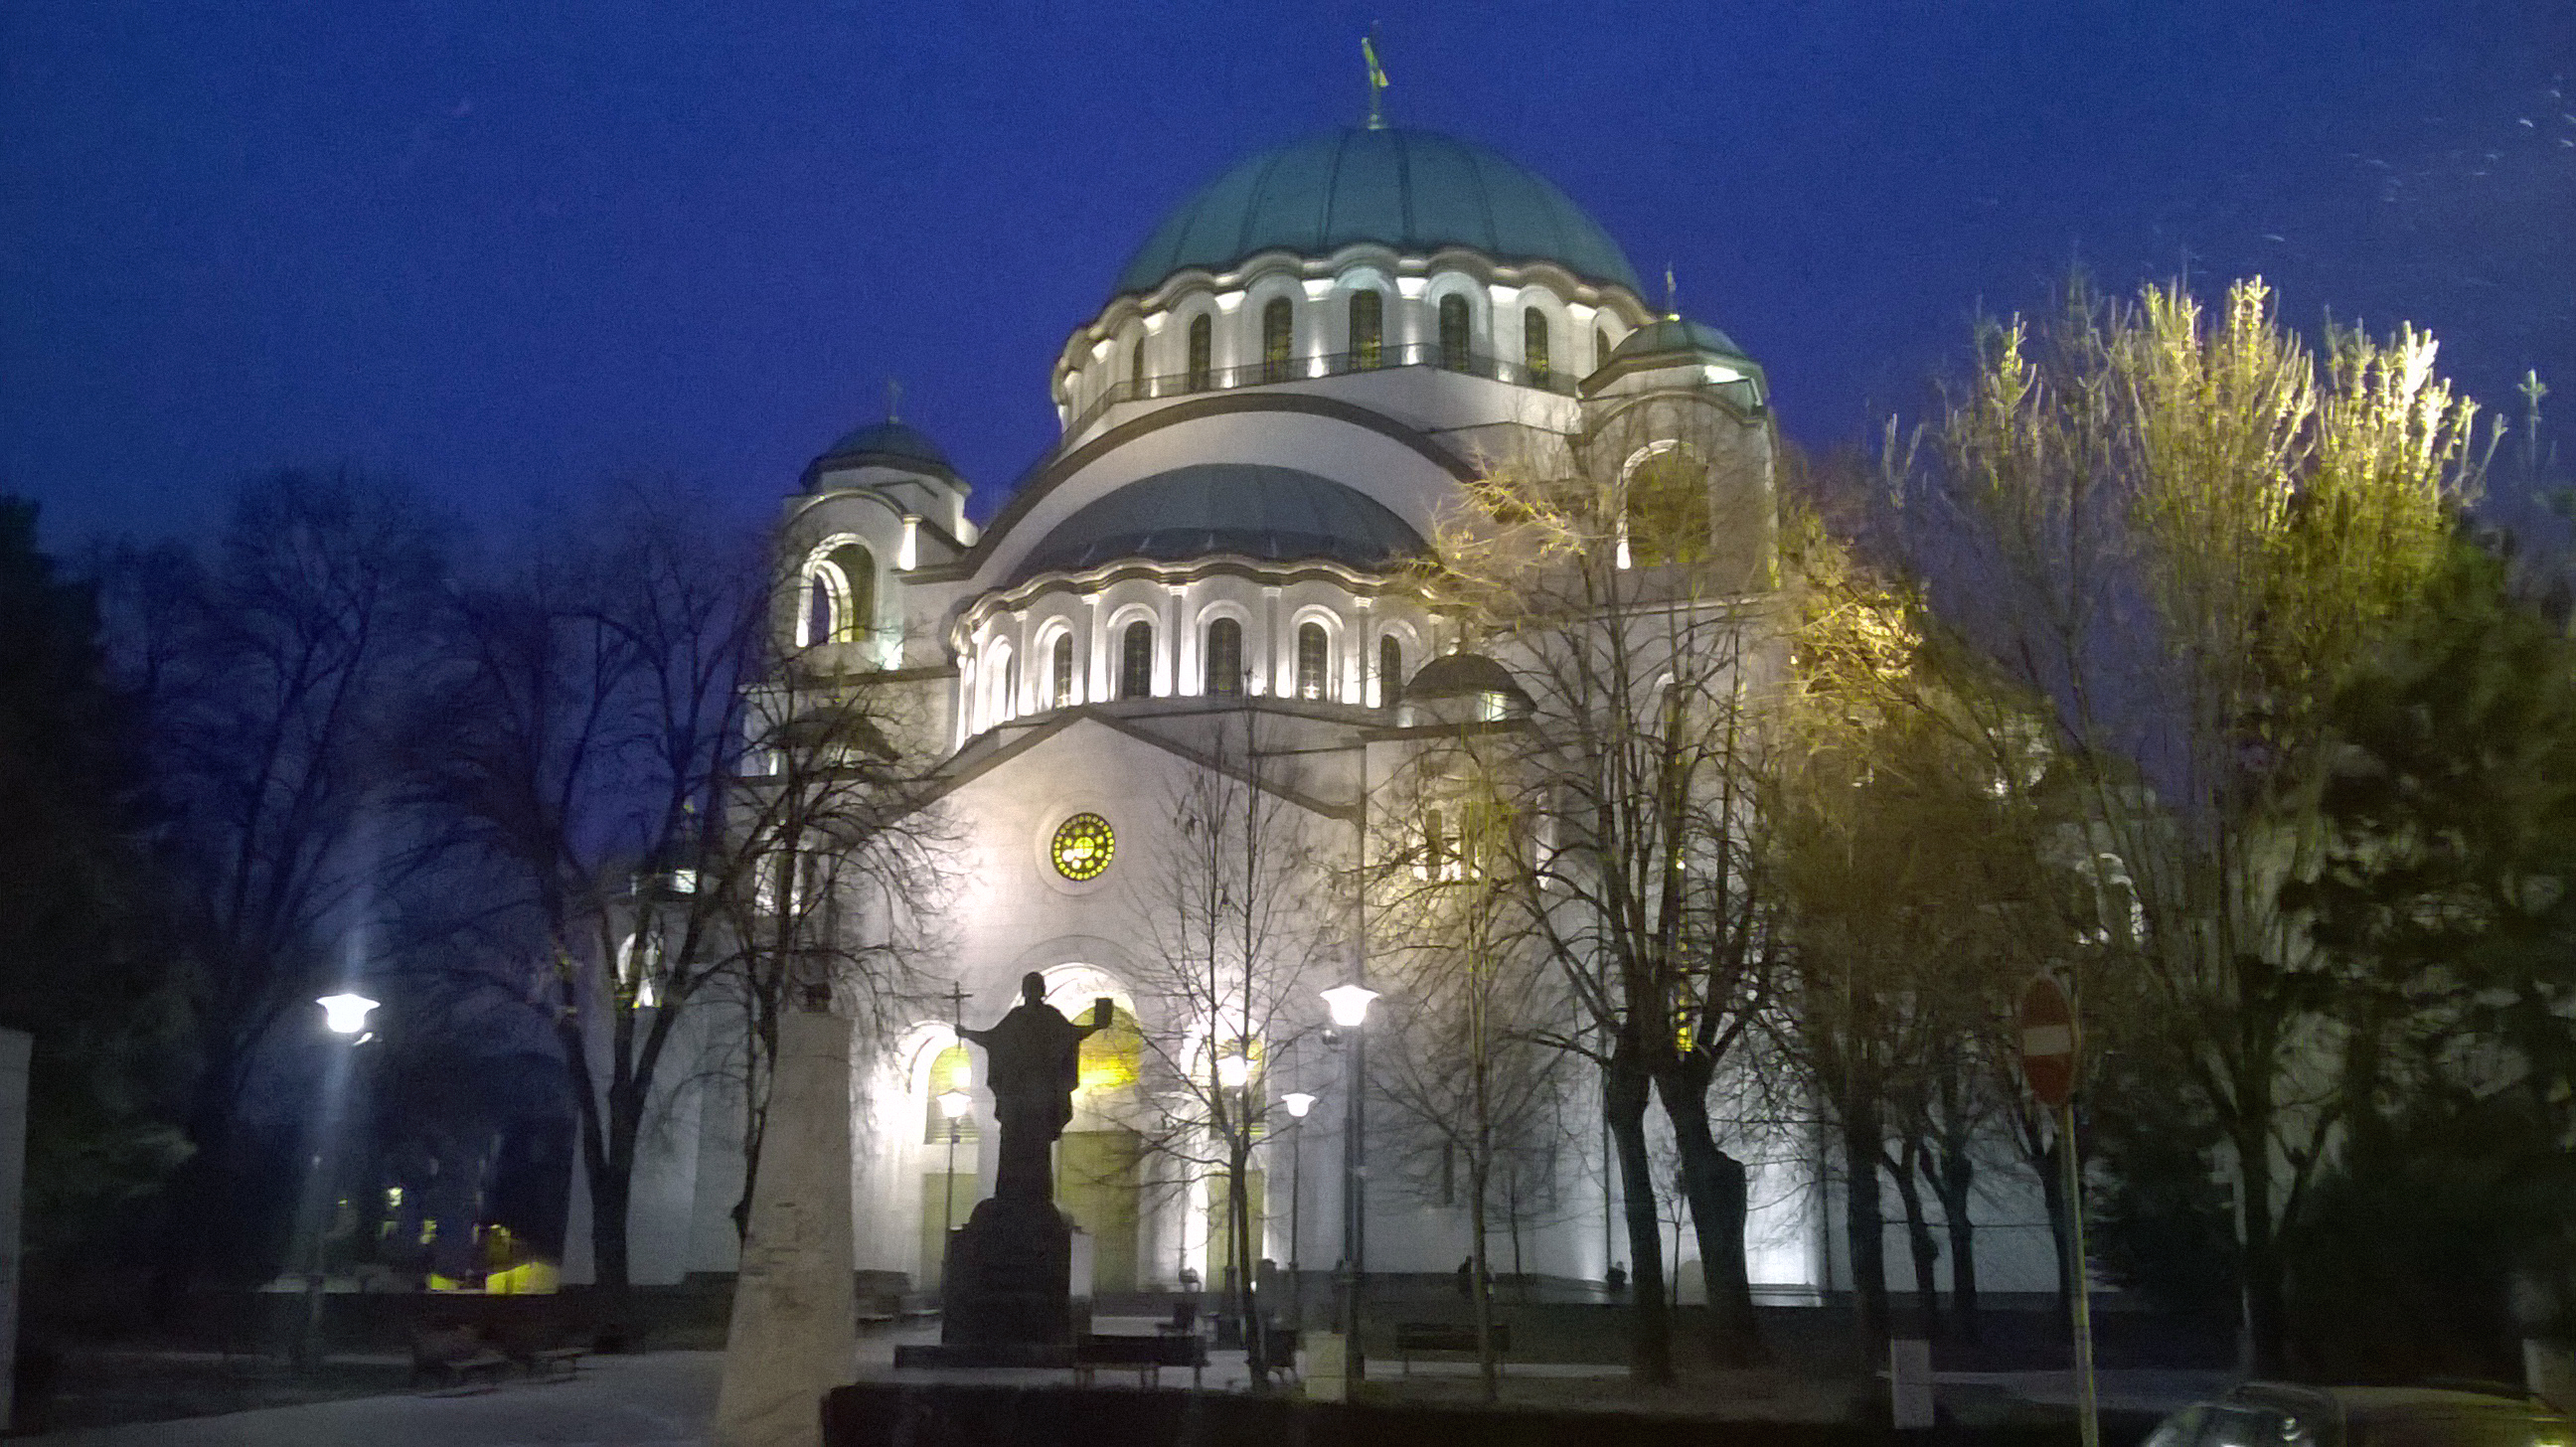 Winter days in Serbia: A long walk in Belgrade